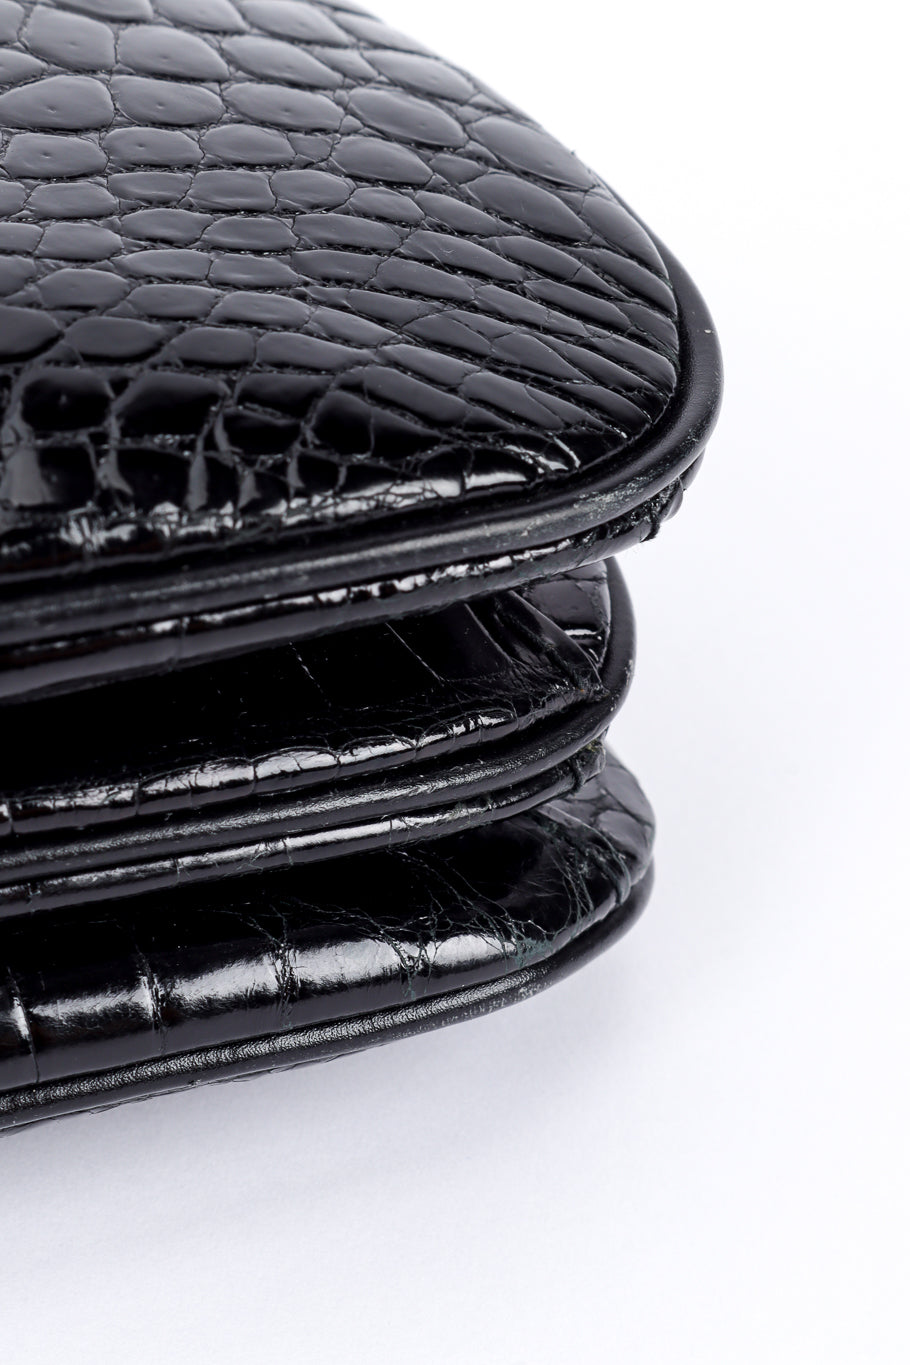 Vintage Gucci Patent Croc Purse scuffed bottom edge @recessla